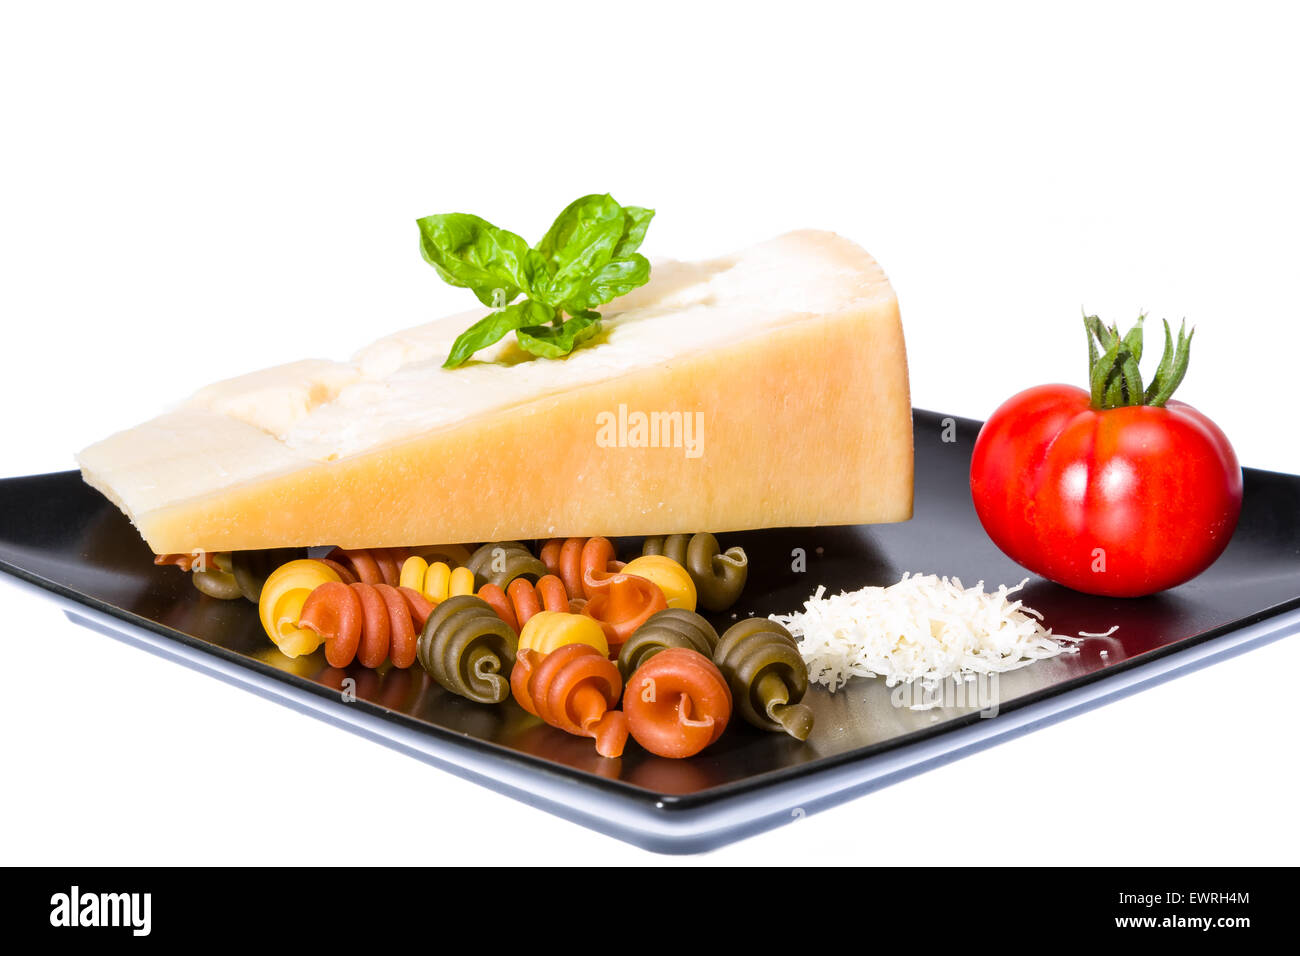 Le fromage, pâtes, tomate et basilic - matière première de la cuisine italienne Banque D'Images